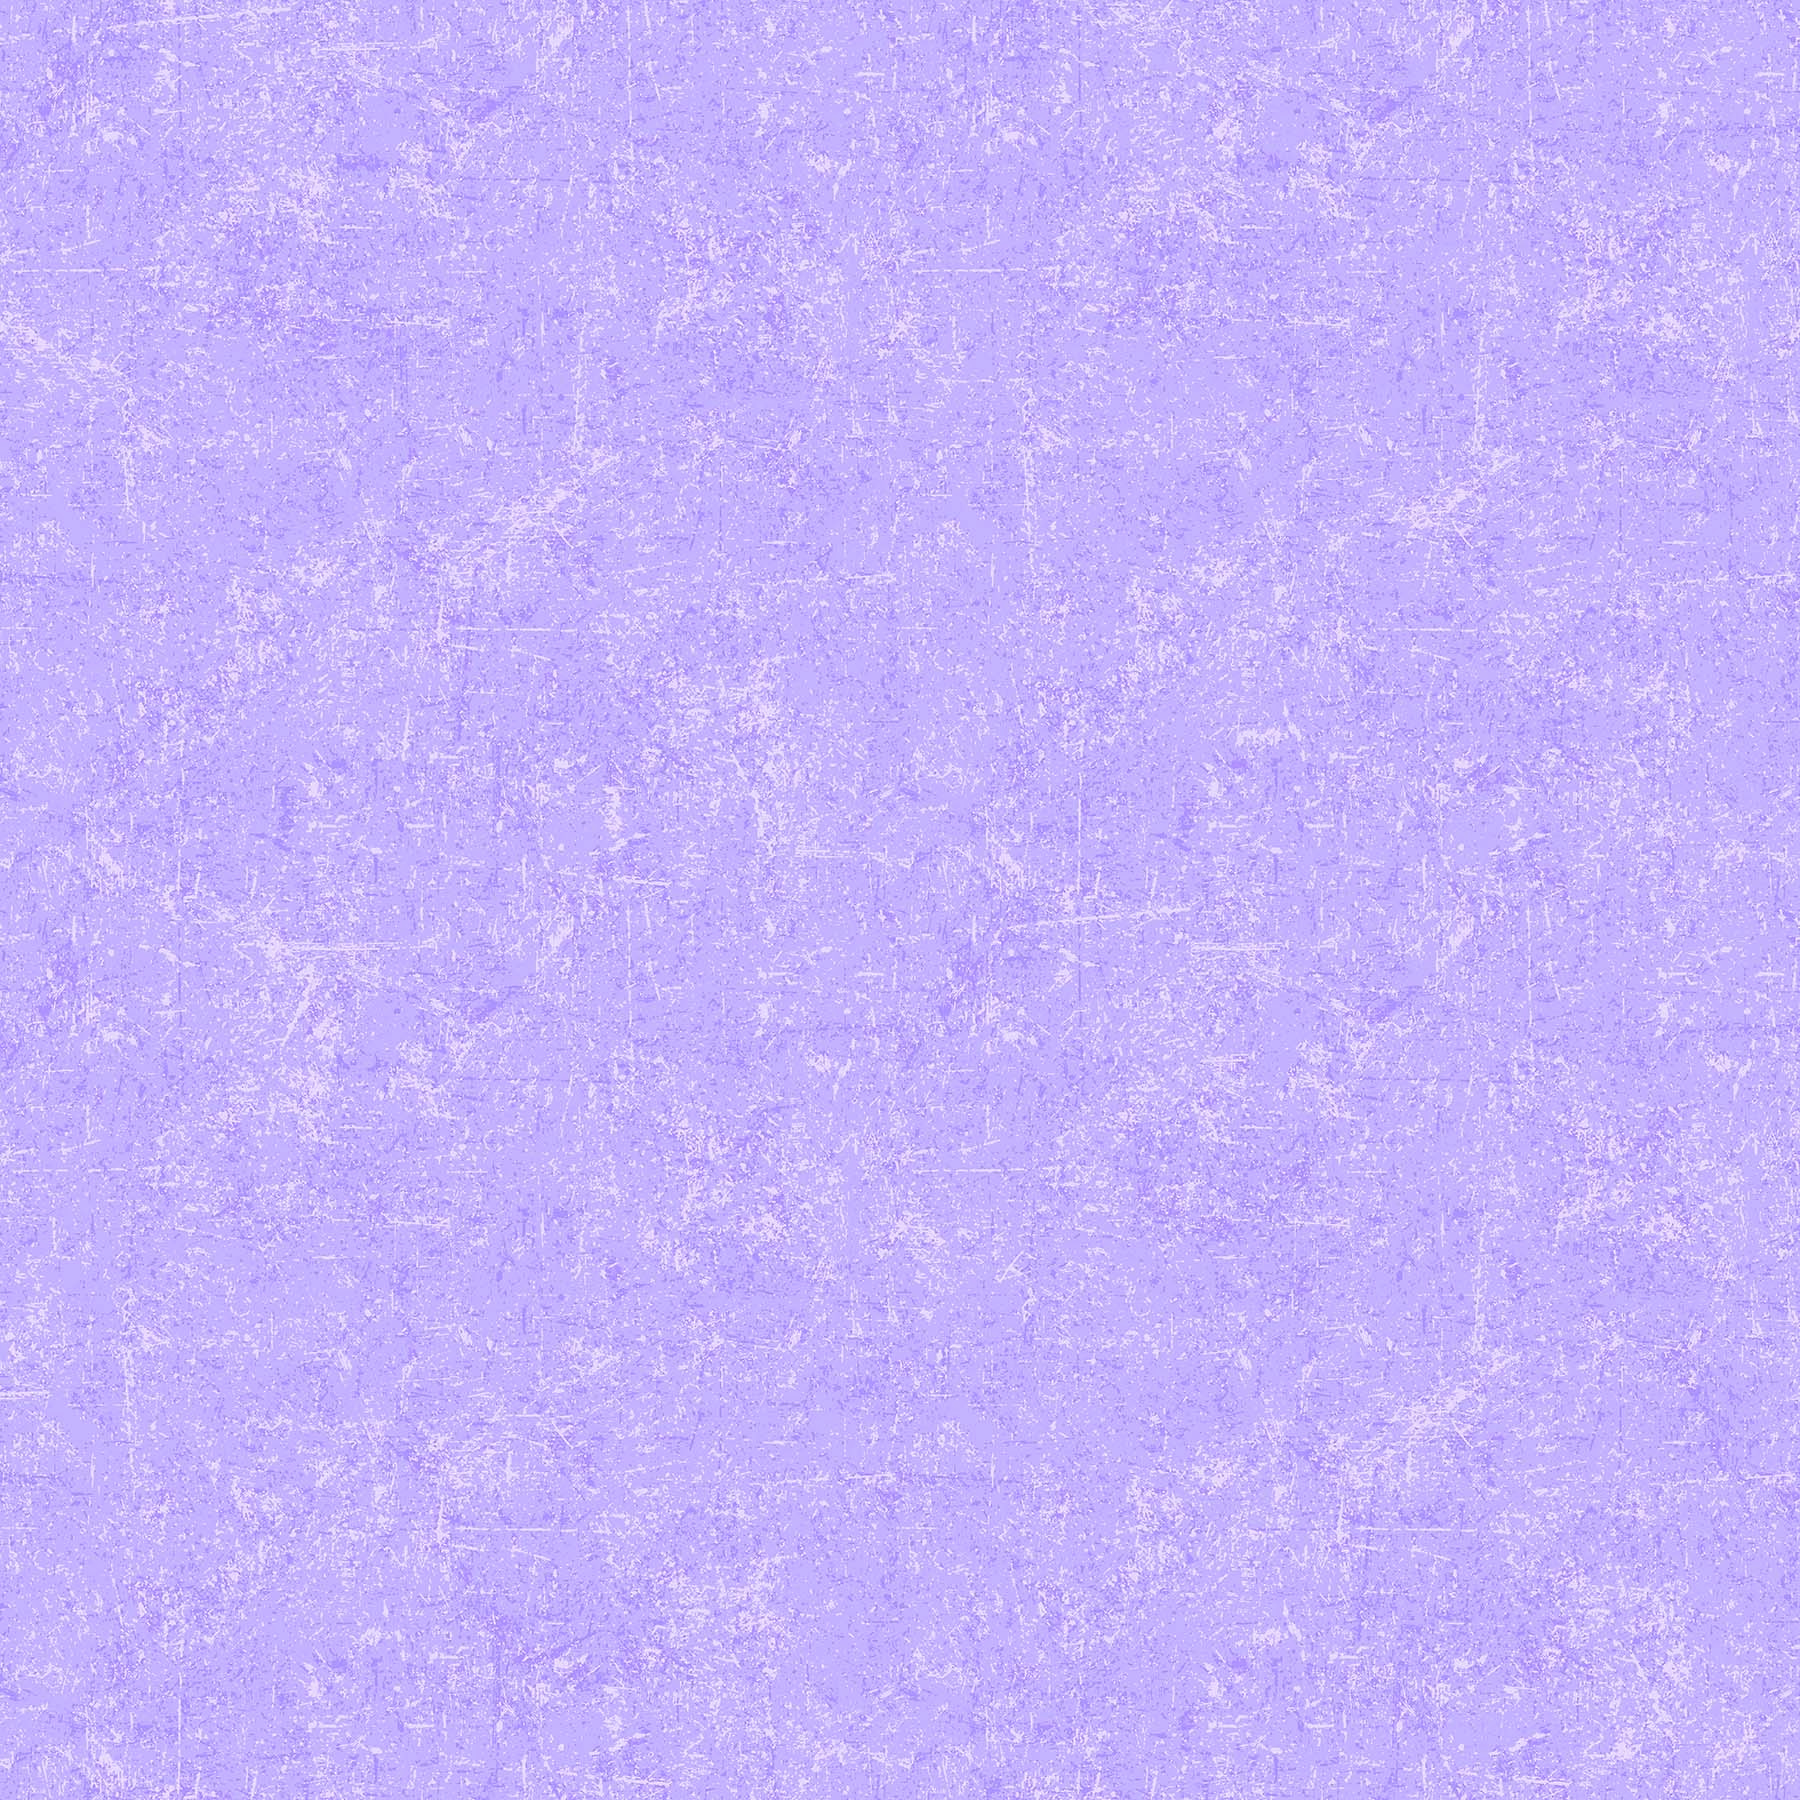 Glisten Sorbet Quilt Fabric - Blender in Grape Light Purple - P10091-80